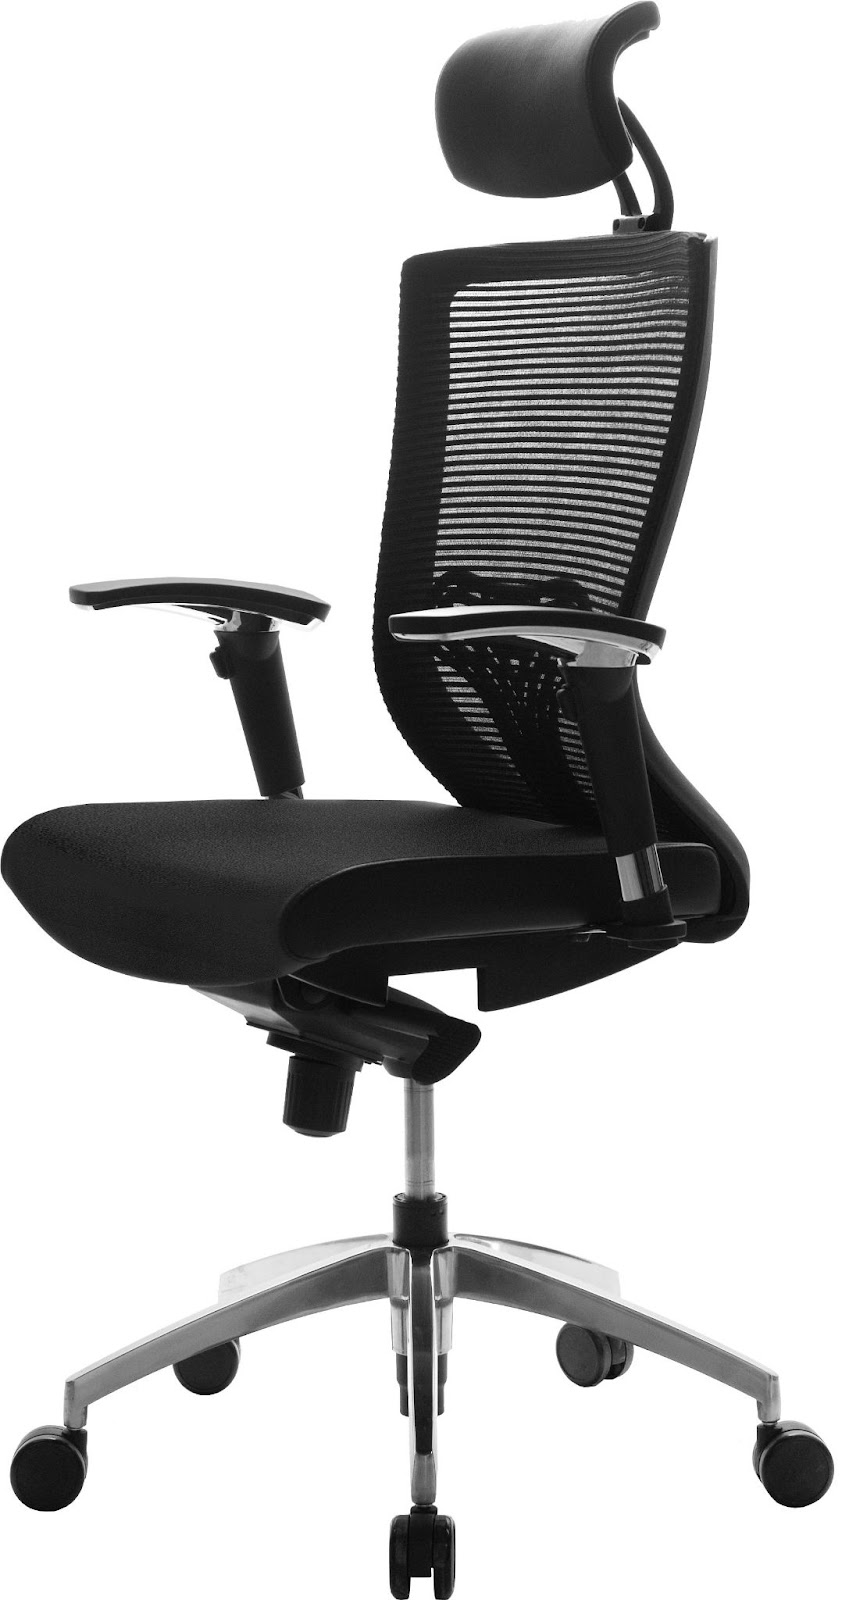 ergonomic-chairs